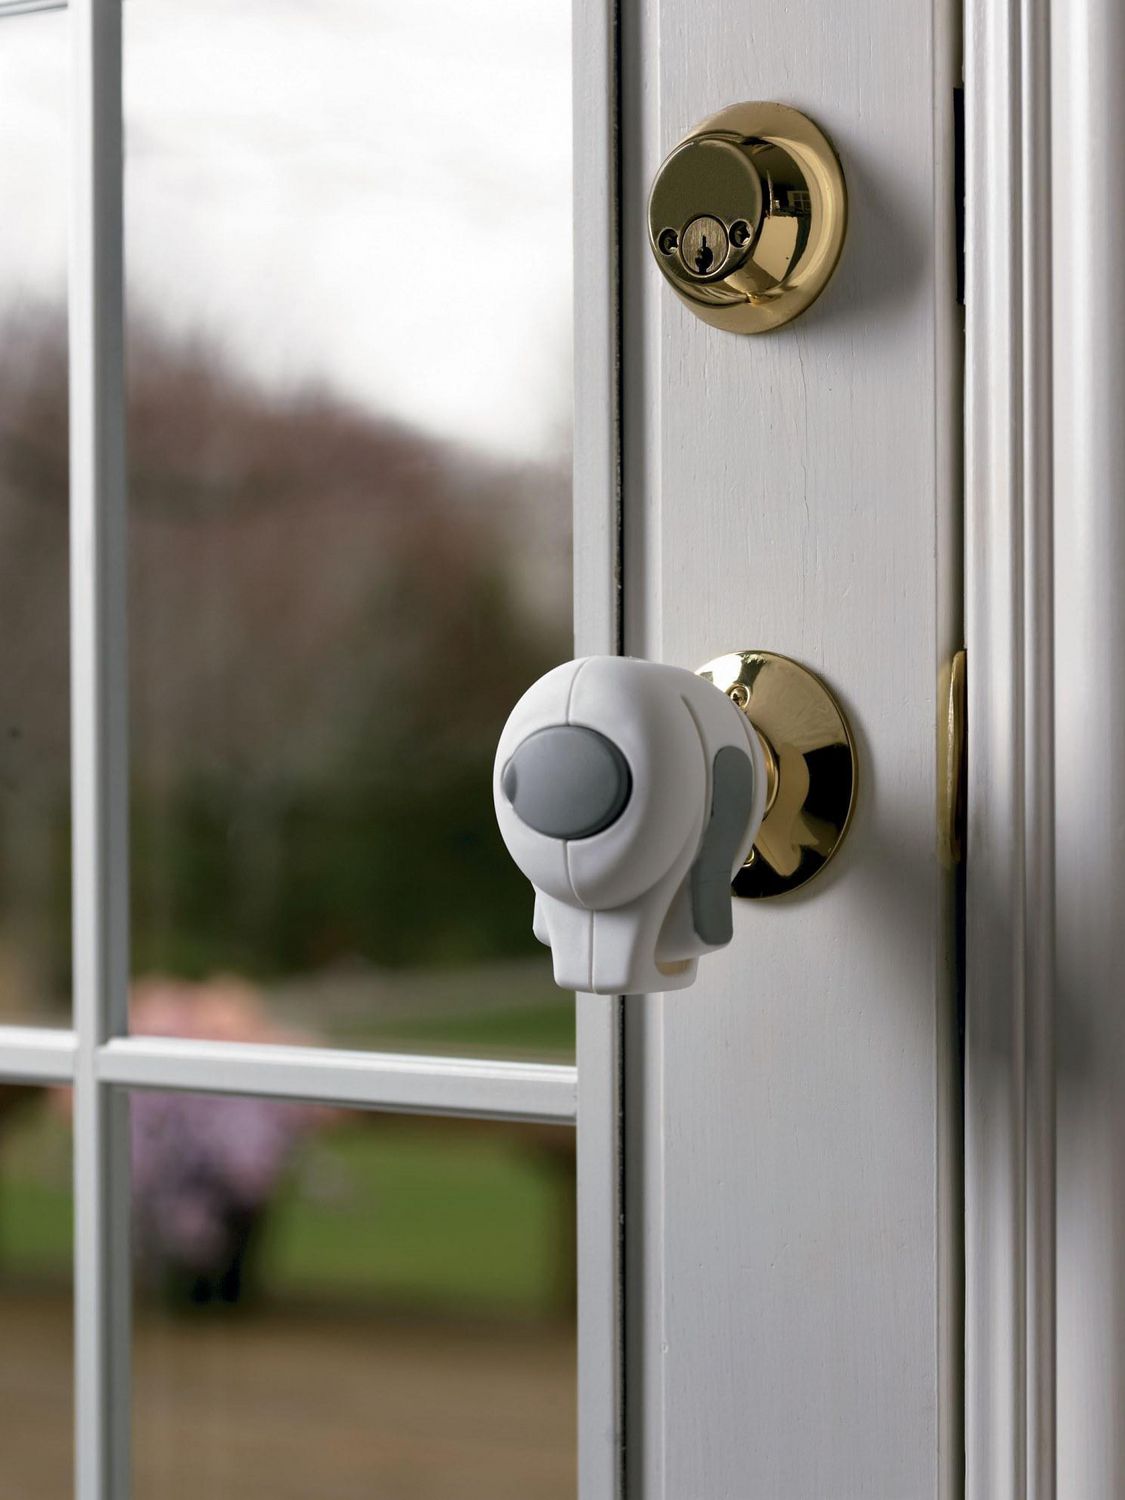 lock over door knob